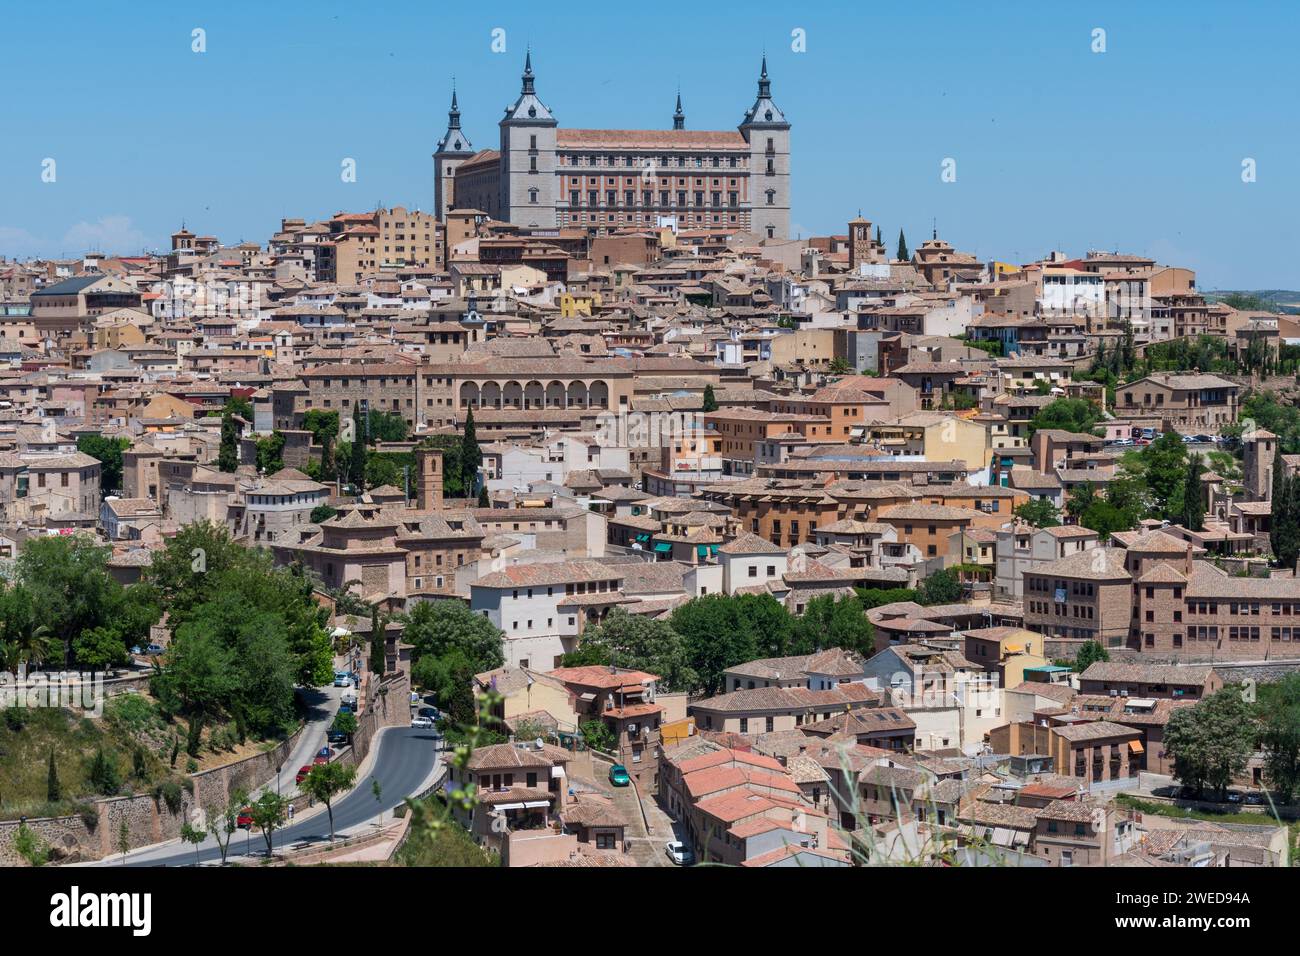 Cattura la bellezza senza tempo di Toledo, Spagna: Un paesaggio panoramico che mostra il fascino storico e lo splendore architettonico Foto Stock